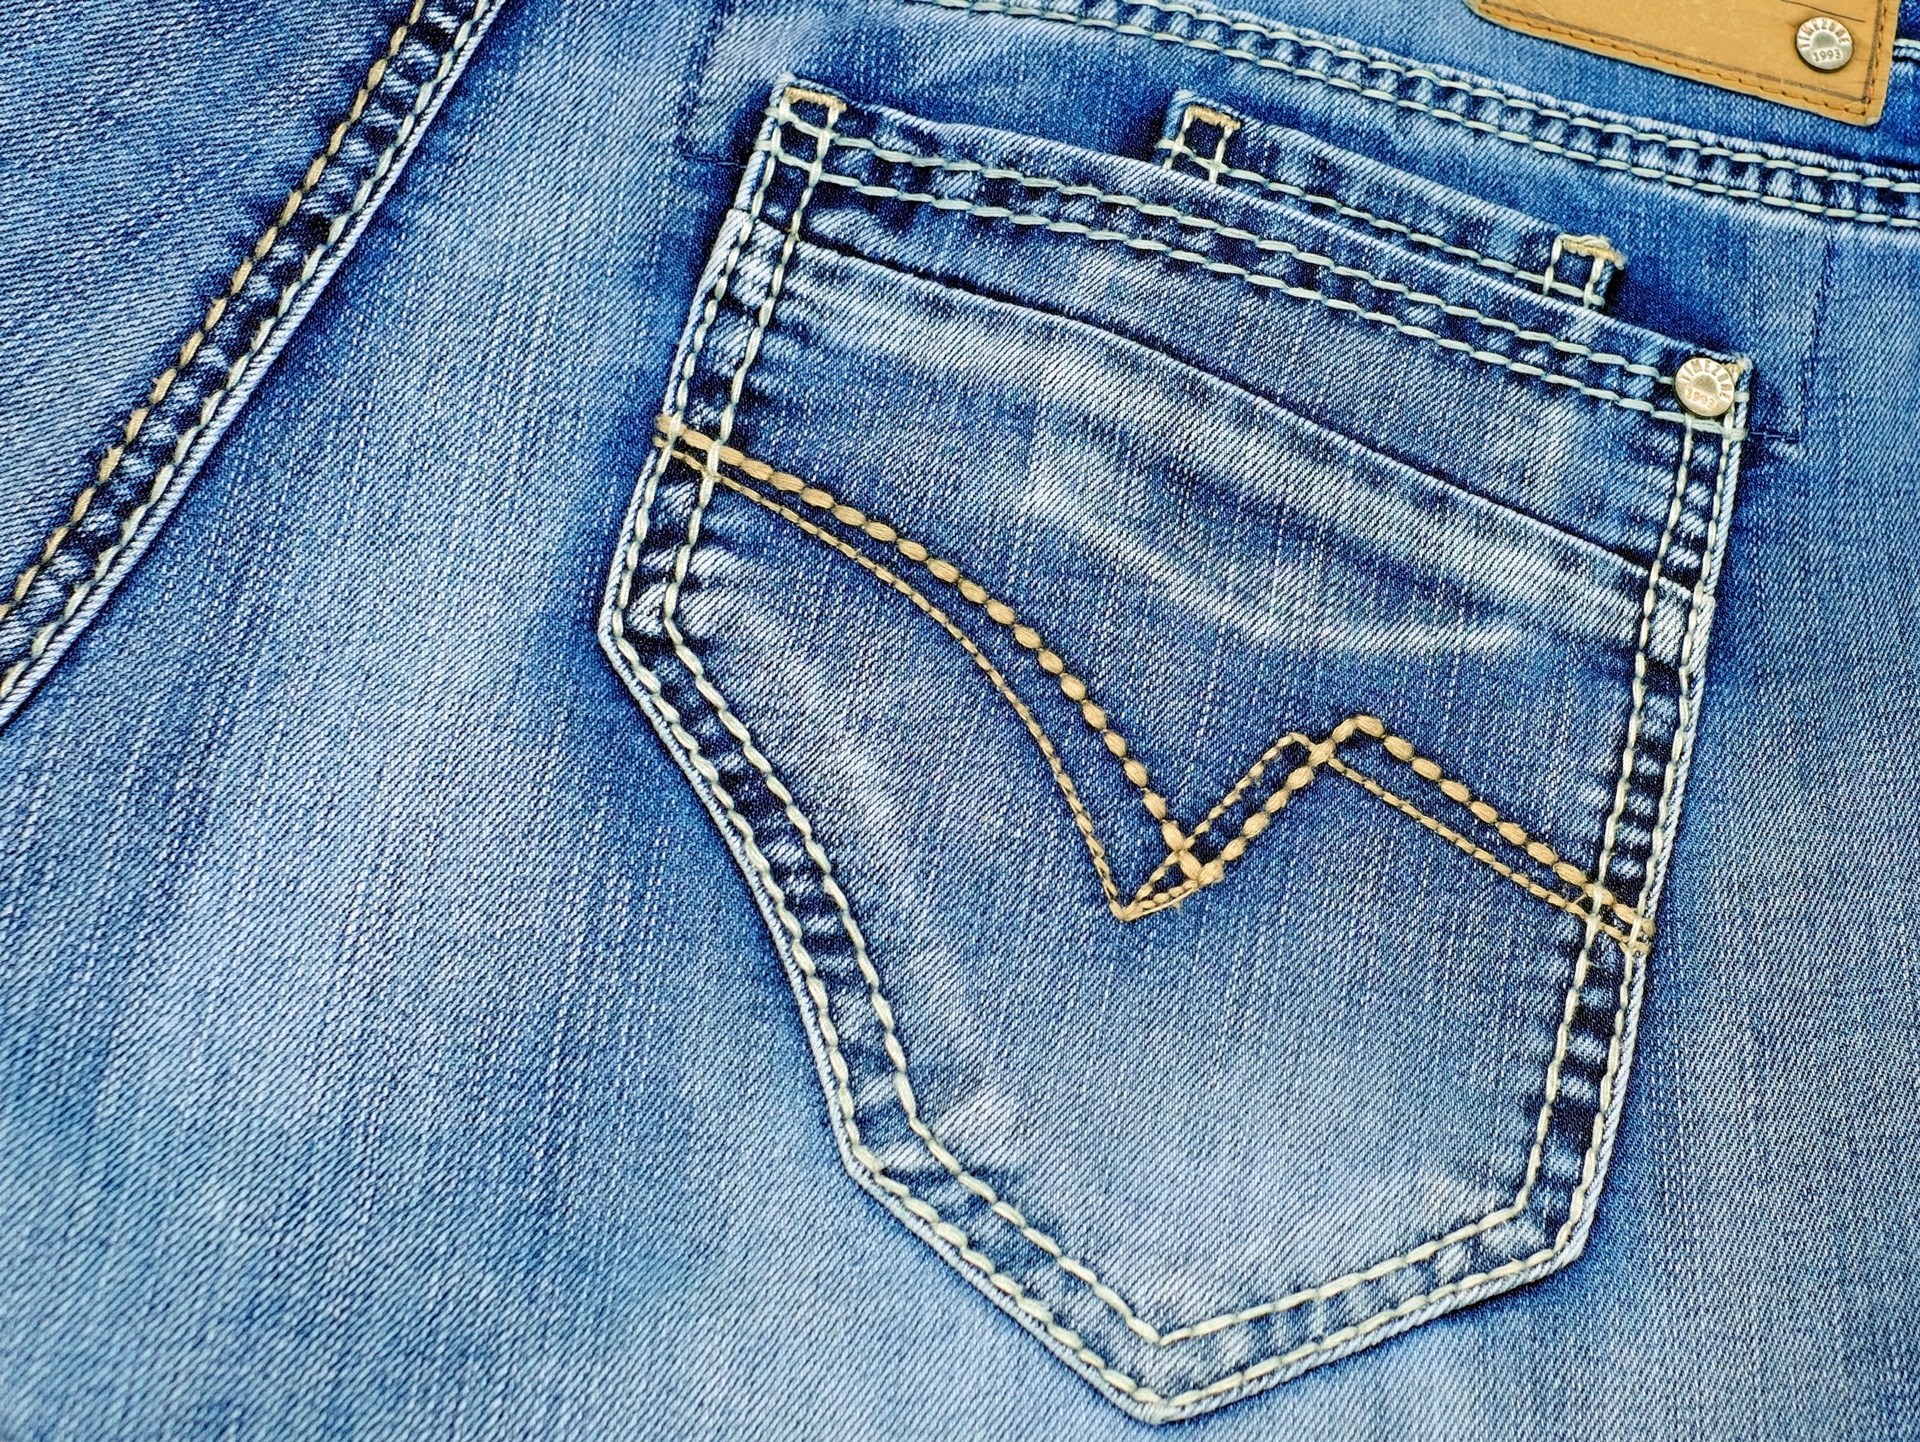 Карман джинсов рисунок. Карман джинсовый. Джинсы с карманами. Задние карманы на джинсах. Джинсовая ткань.